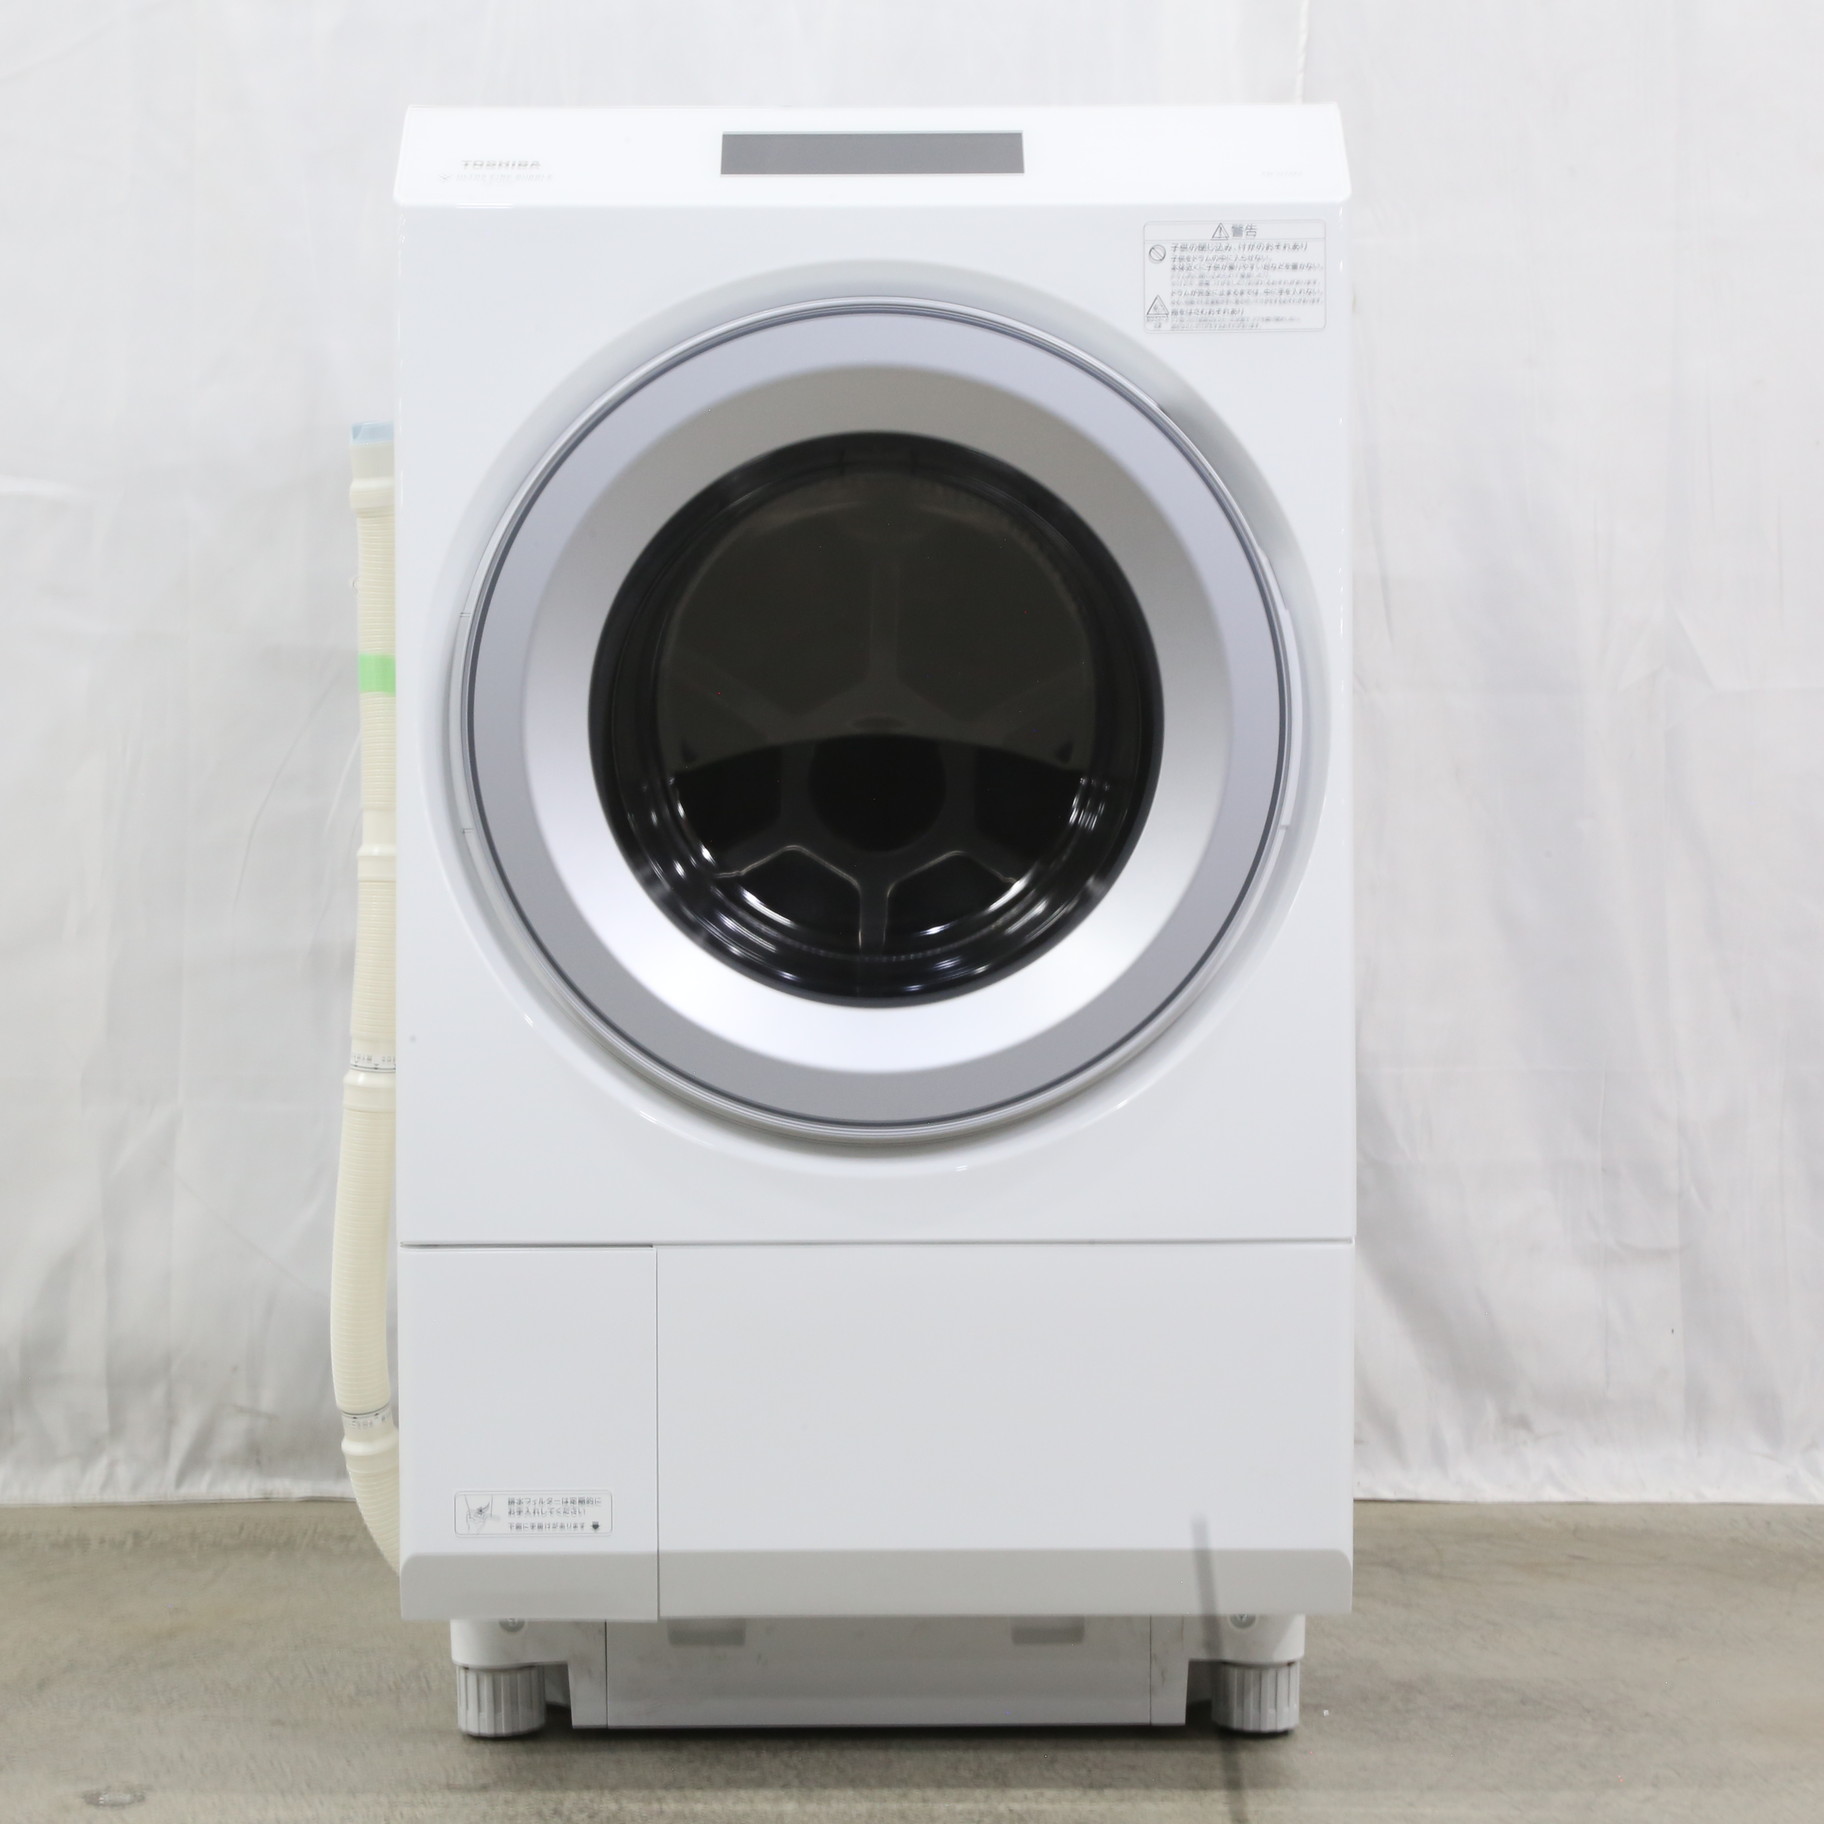 〔展示品〕 ドラム式洗濯乾燥機 グランホワイト TW-127XP2L-W ［洗濯12.0kg ／乾燥7.0kg ／ヒートポンプ乾燥 ／左開き］